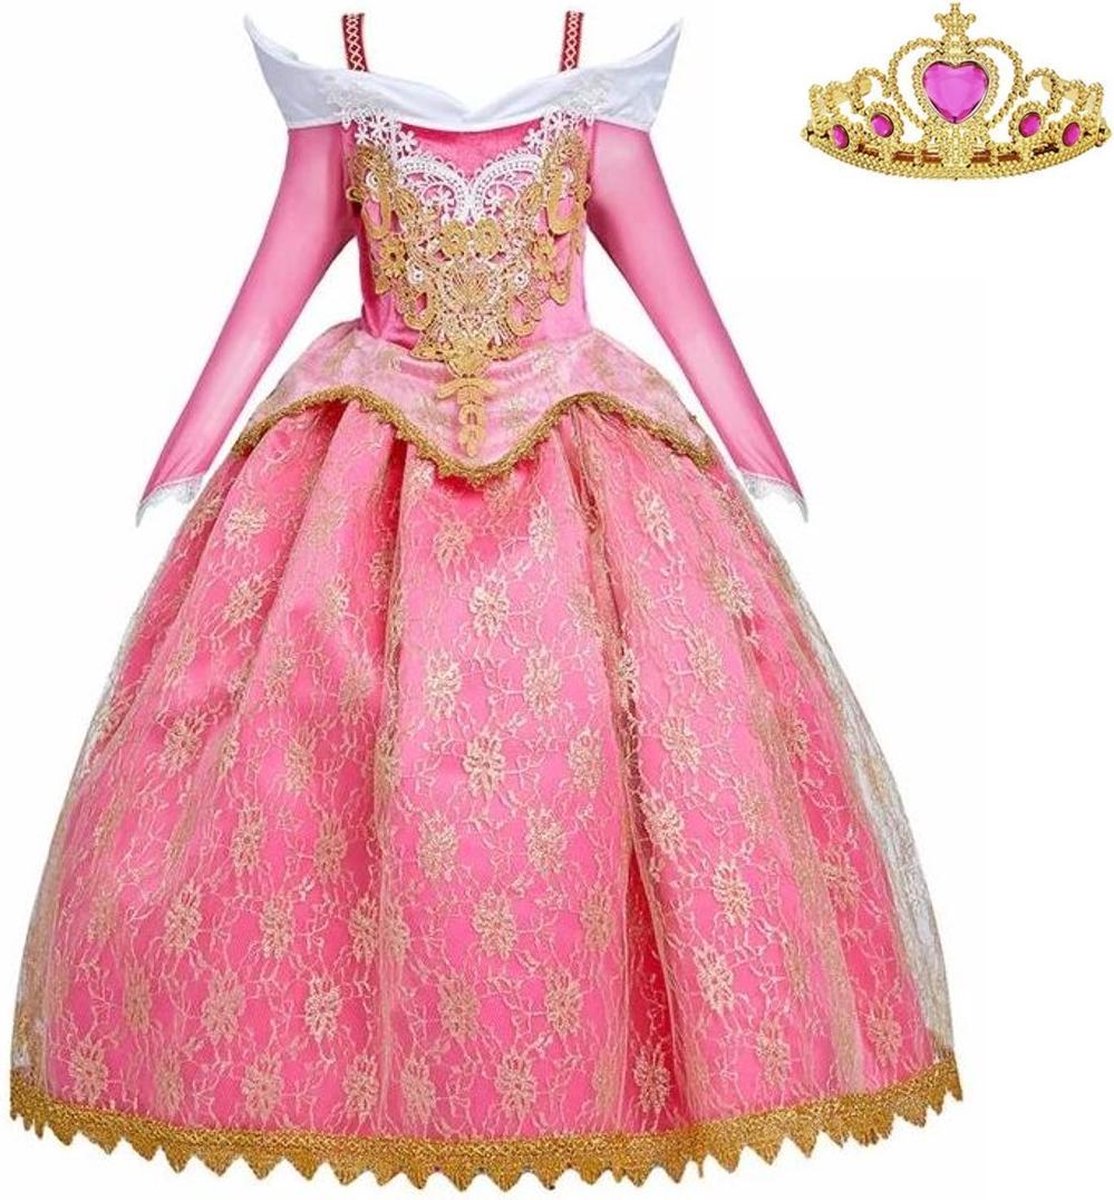 Doornroosje jurk Prinsessen jurk Royal Queen Deluxe 134-140 (140) roze goud + kroon verkleedjurk verkleedkleding